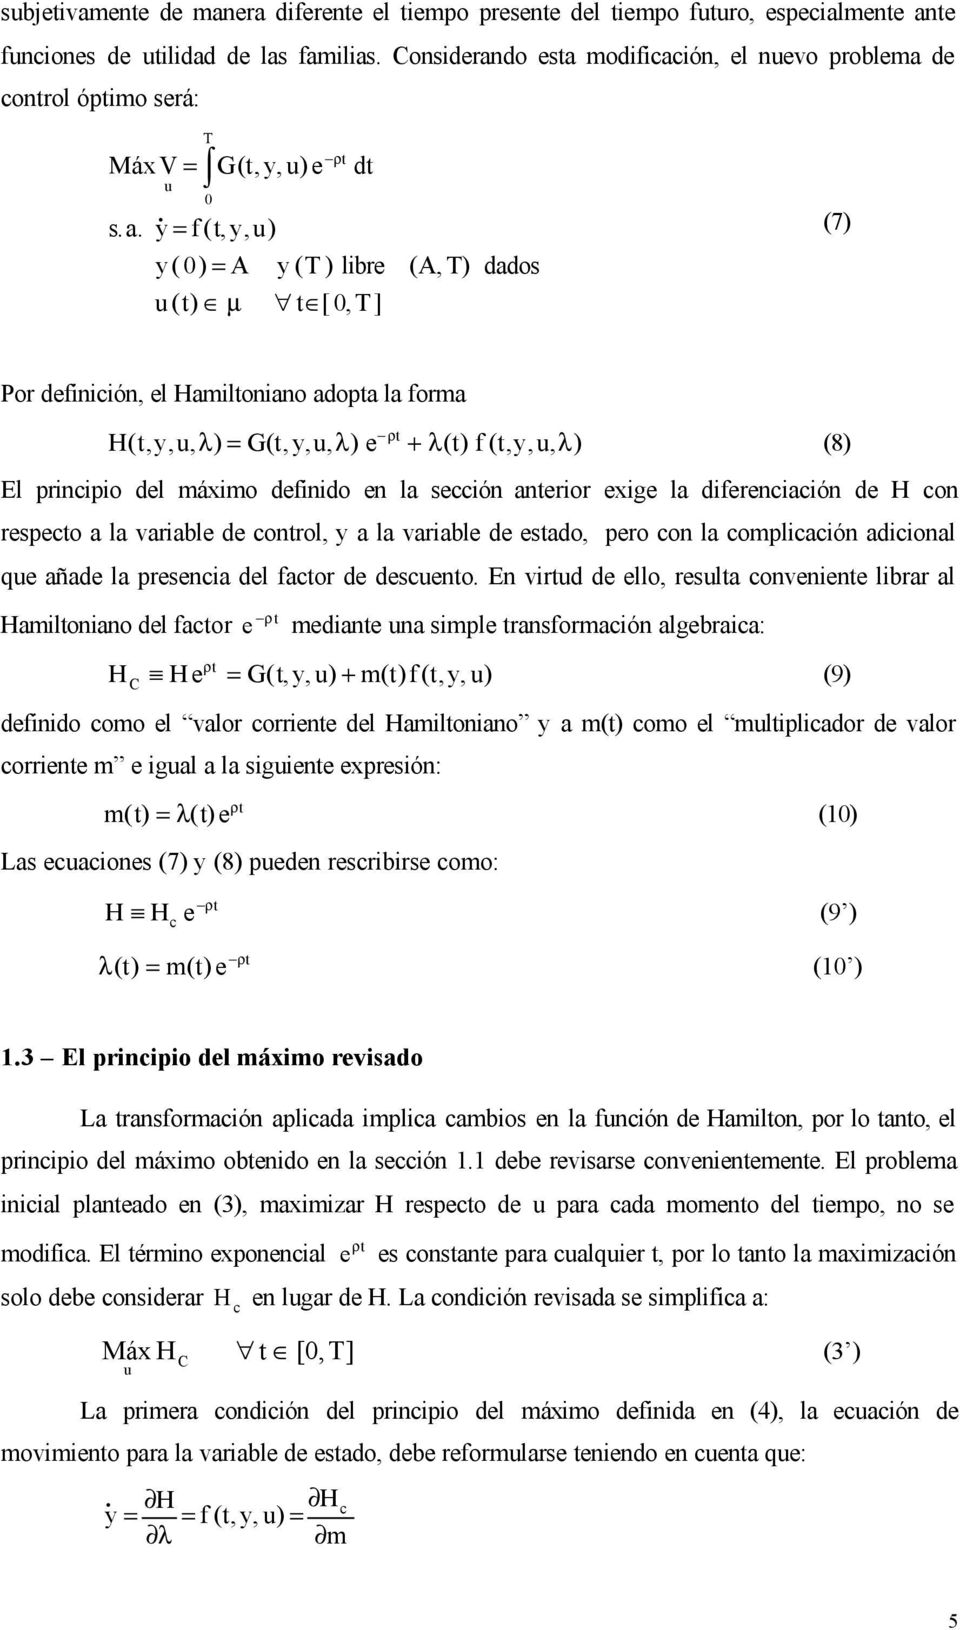 λ(t) f (t,y,u, λ) (8) El principio del máximo definido en la sección anterior exige la diferenciación de H con respecto a la variable de control, y a la variable de estado, pero con la complicación